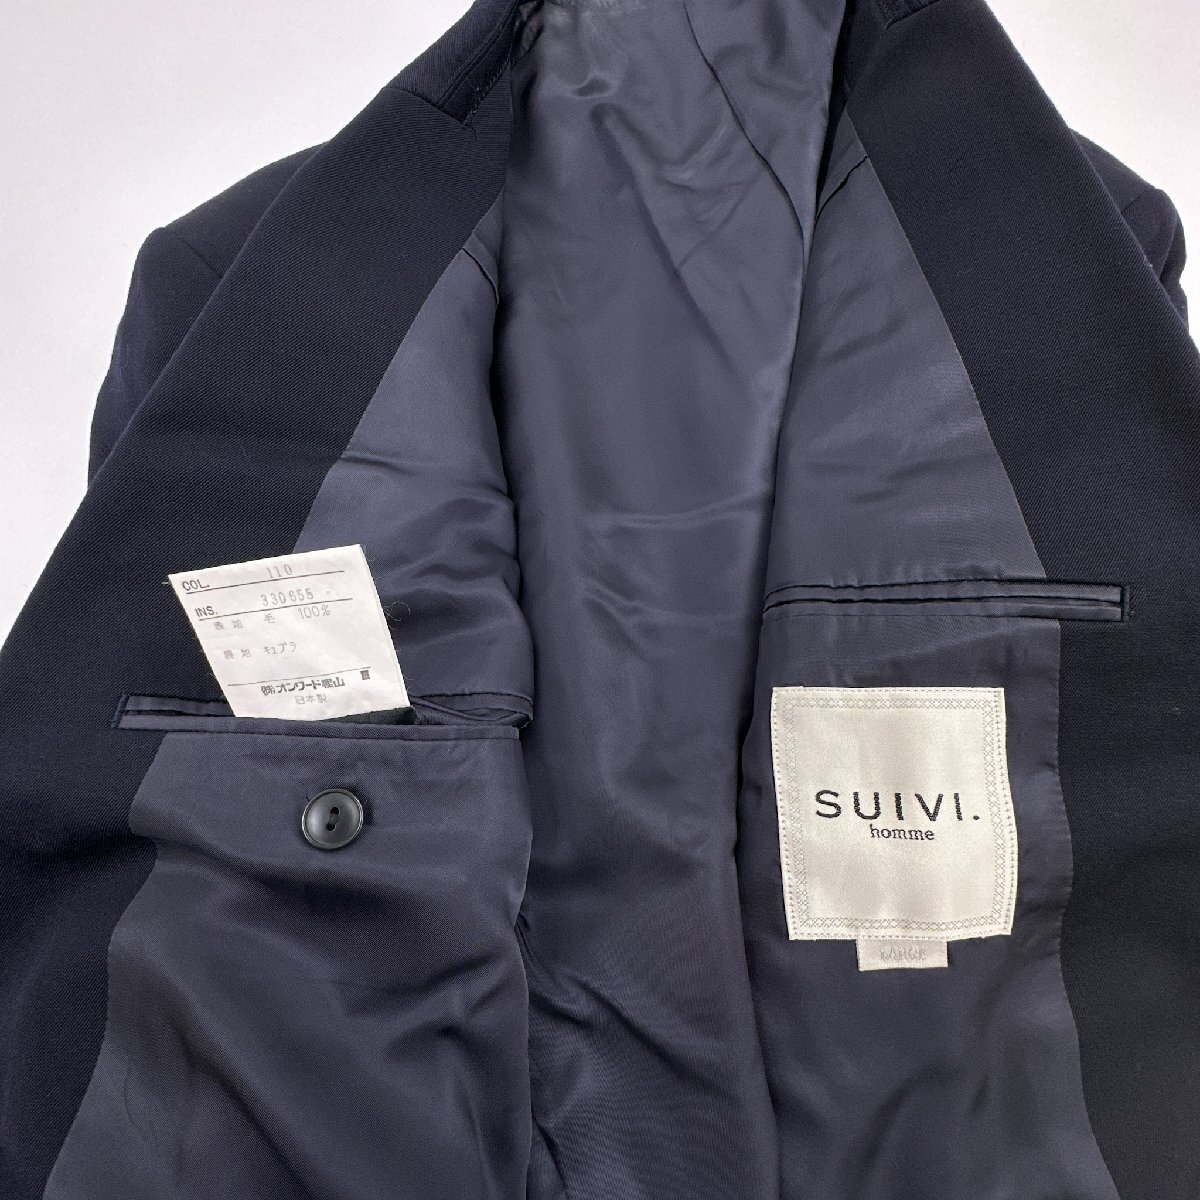 上下◆SUIVI homme スイヴィ セットアップ スーツ テーラードジャケット スラックス Lサイズ/ネイビー 濃紺/メンズ 日本製_画像4